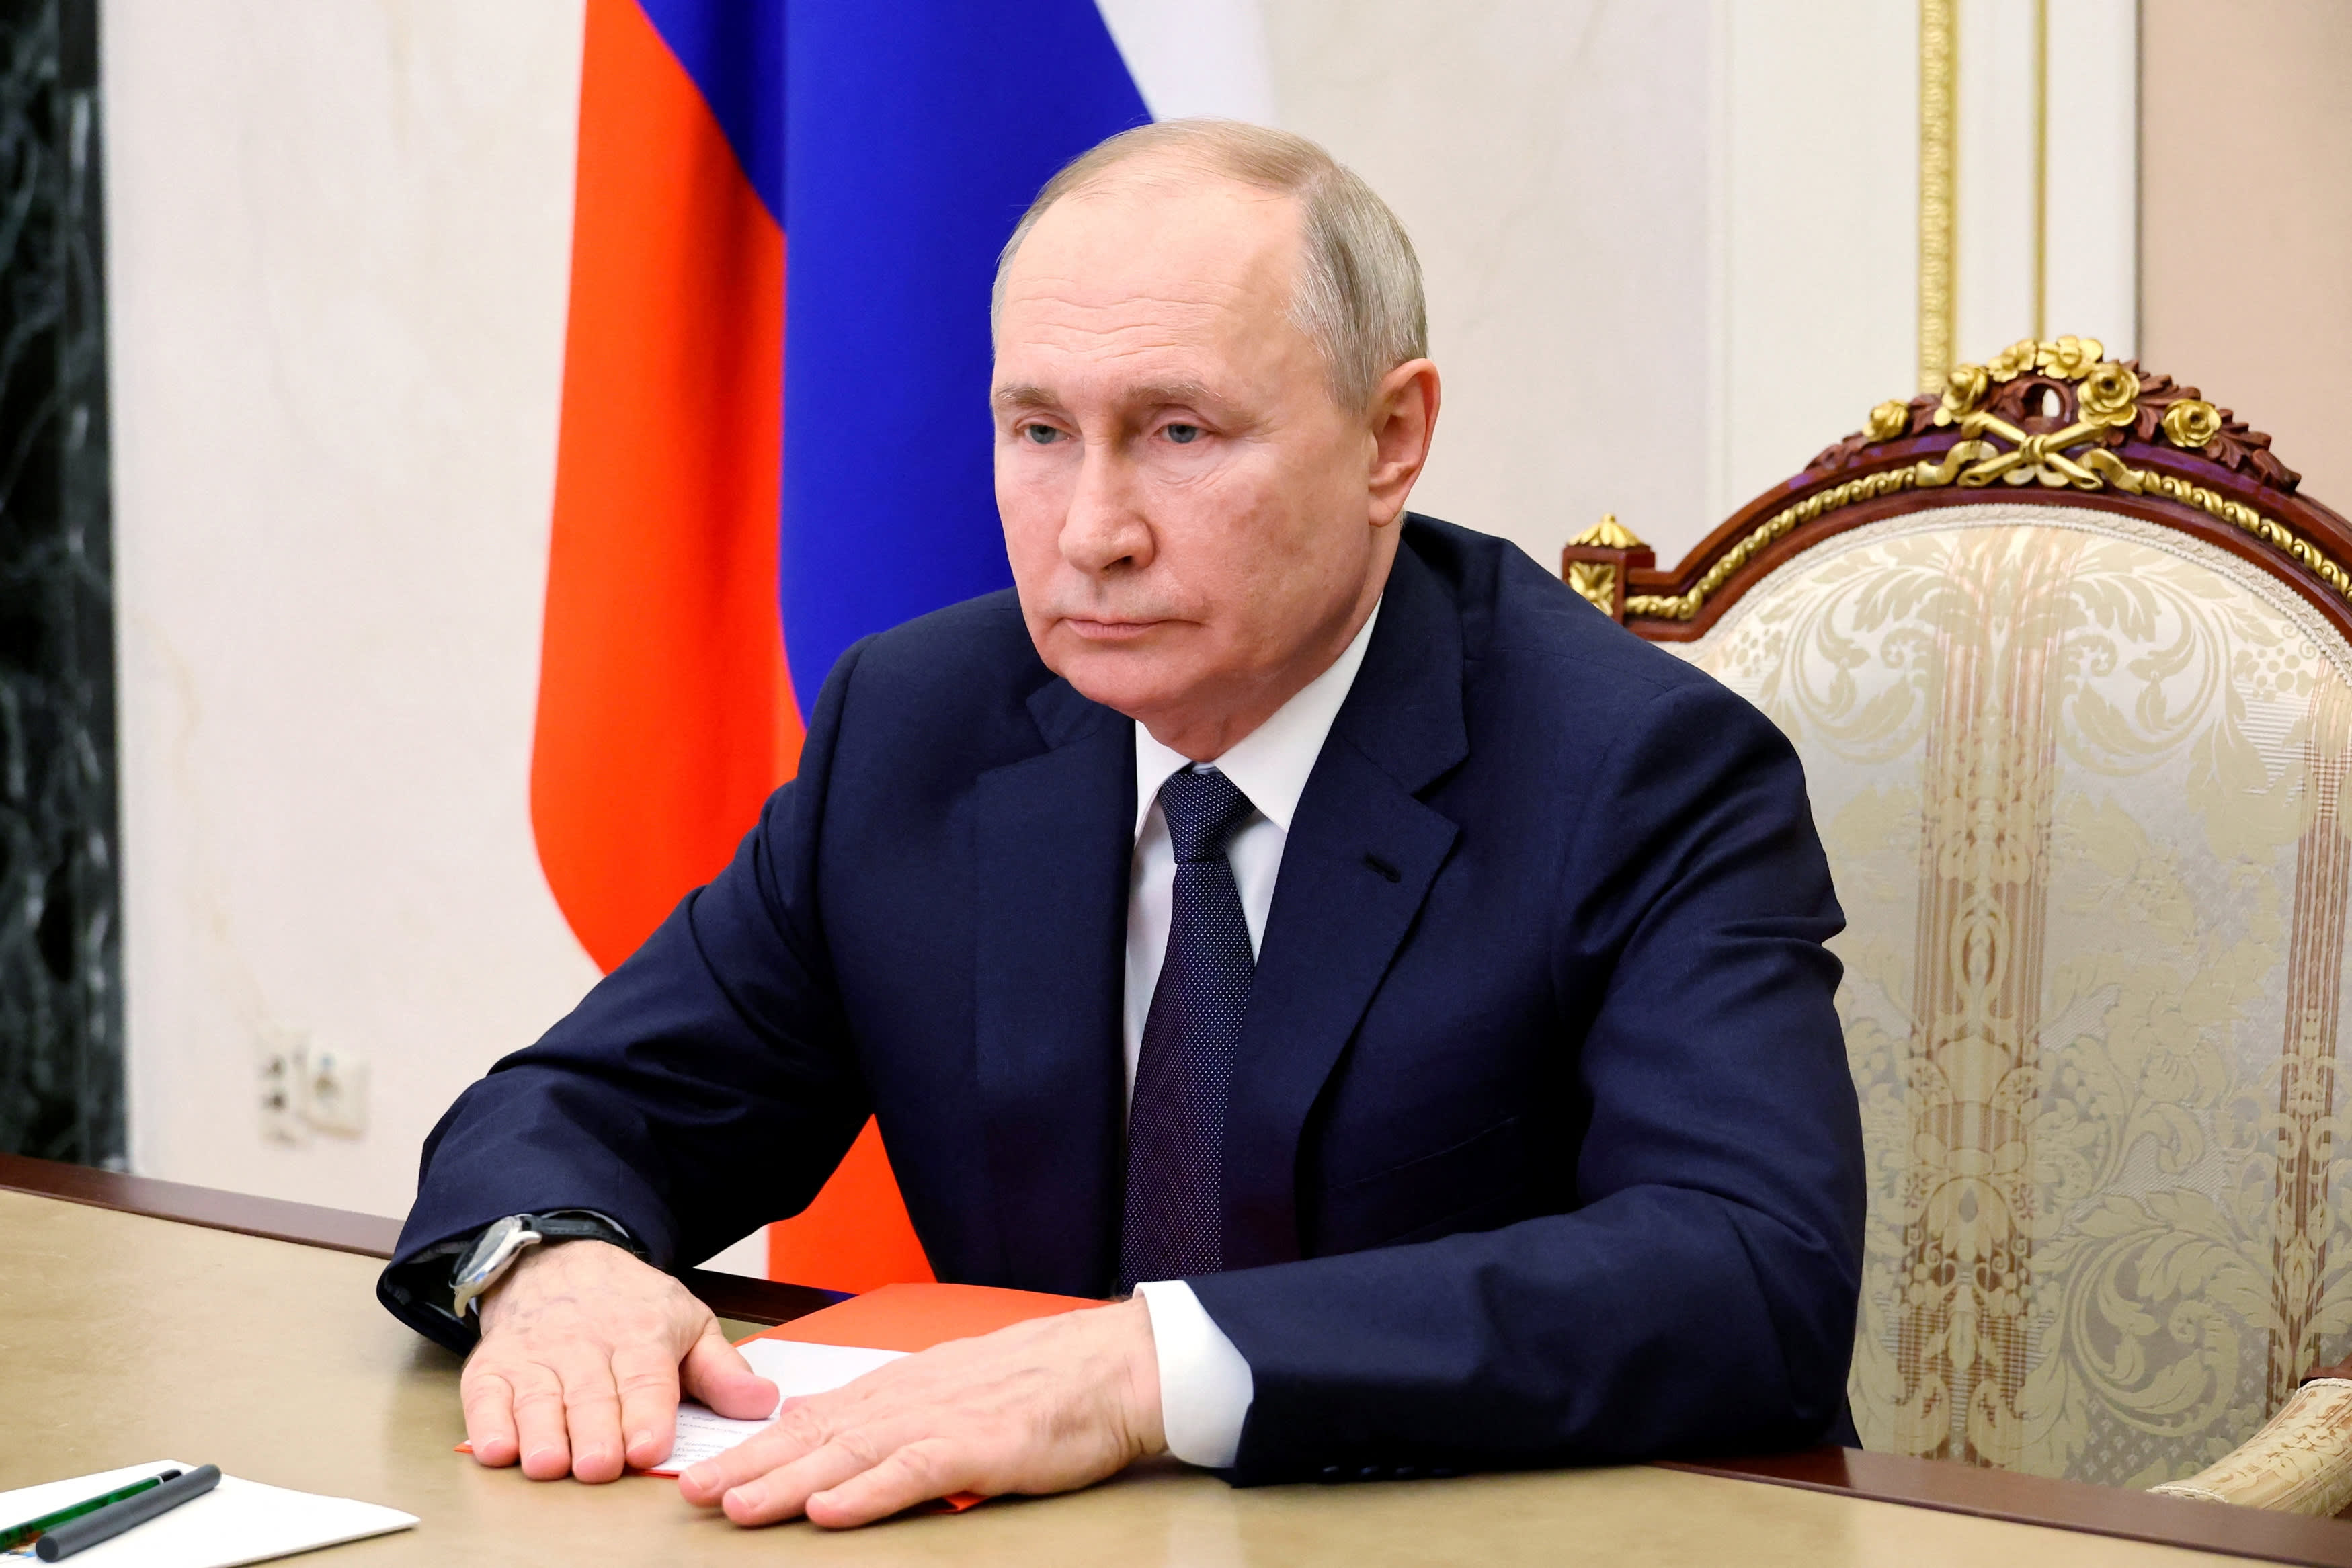 Putin w rzadkim wywiadzie dla USA mówi, że Rosja nie jest zainteresowana atakowaniem Polski ani Łotwy